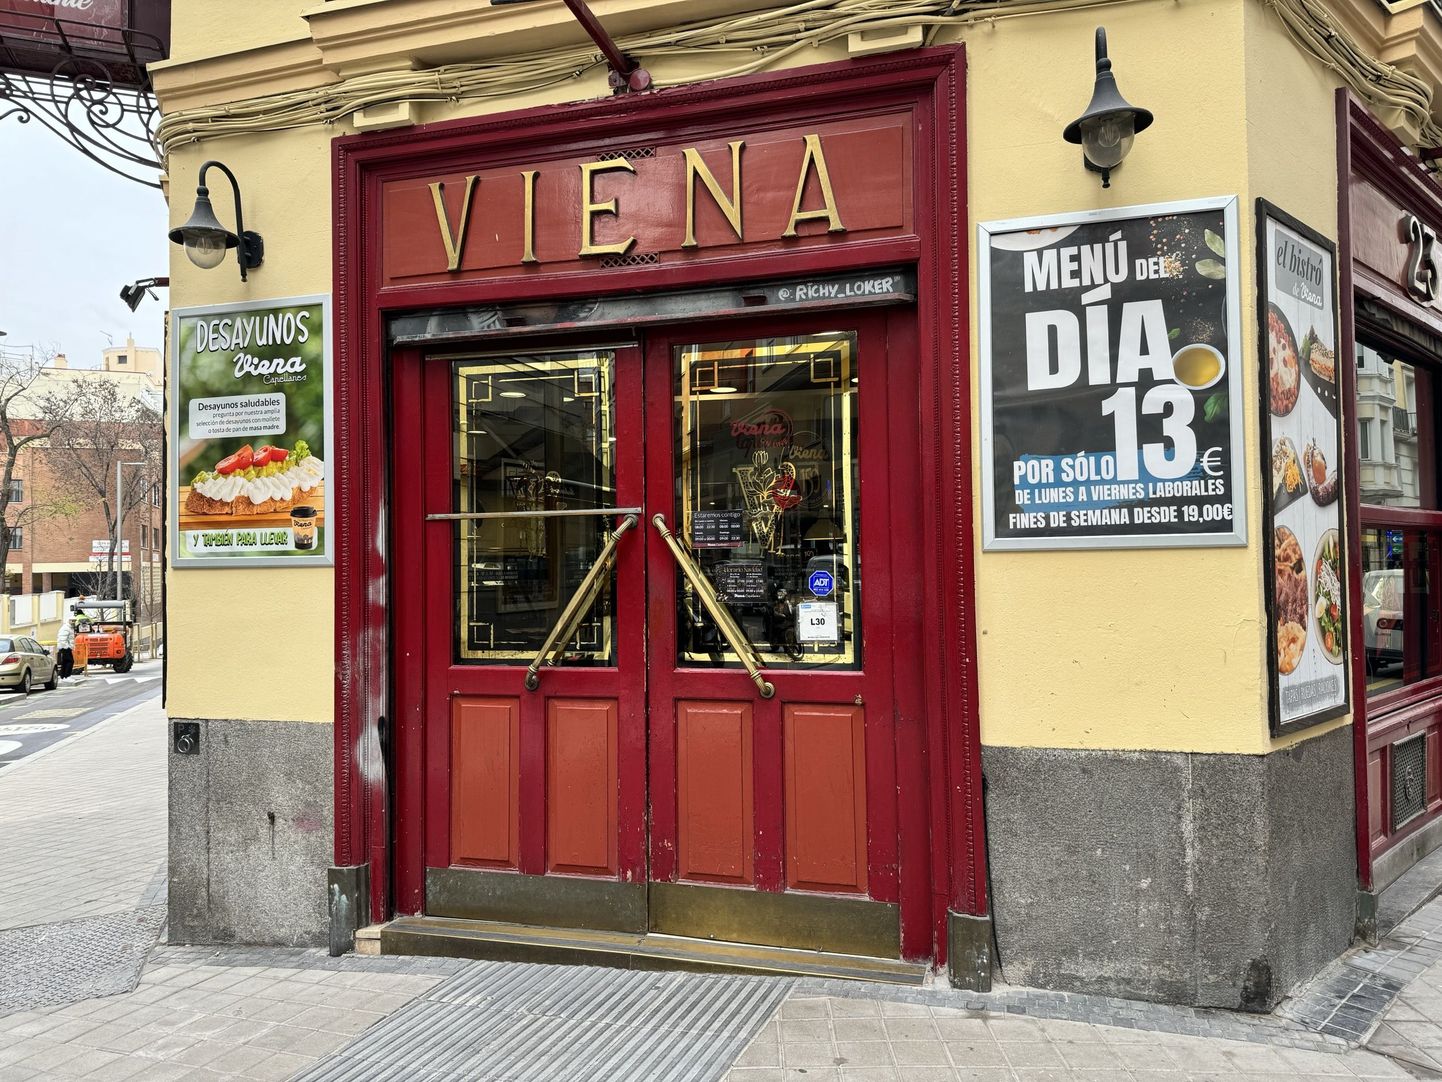 Мадридский ресторан, где по будням можно пообедать за 13, а на выходных - за 19 евро.